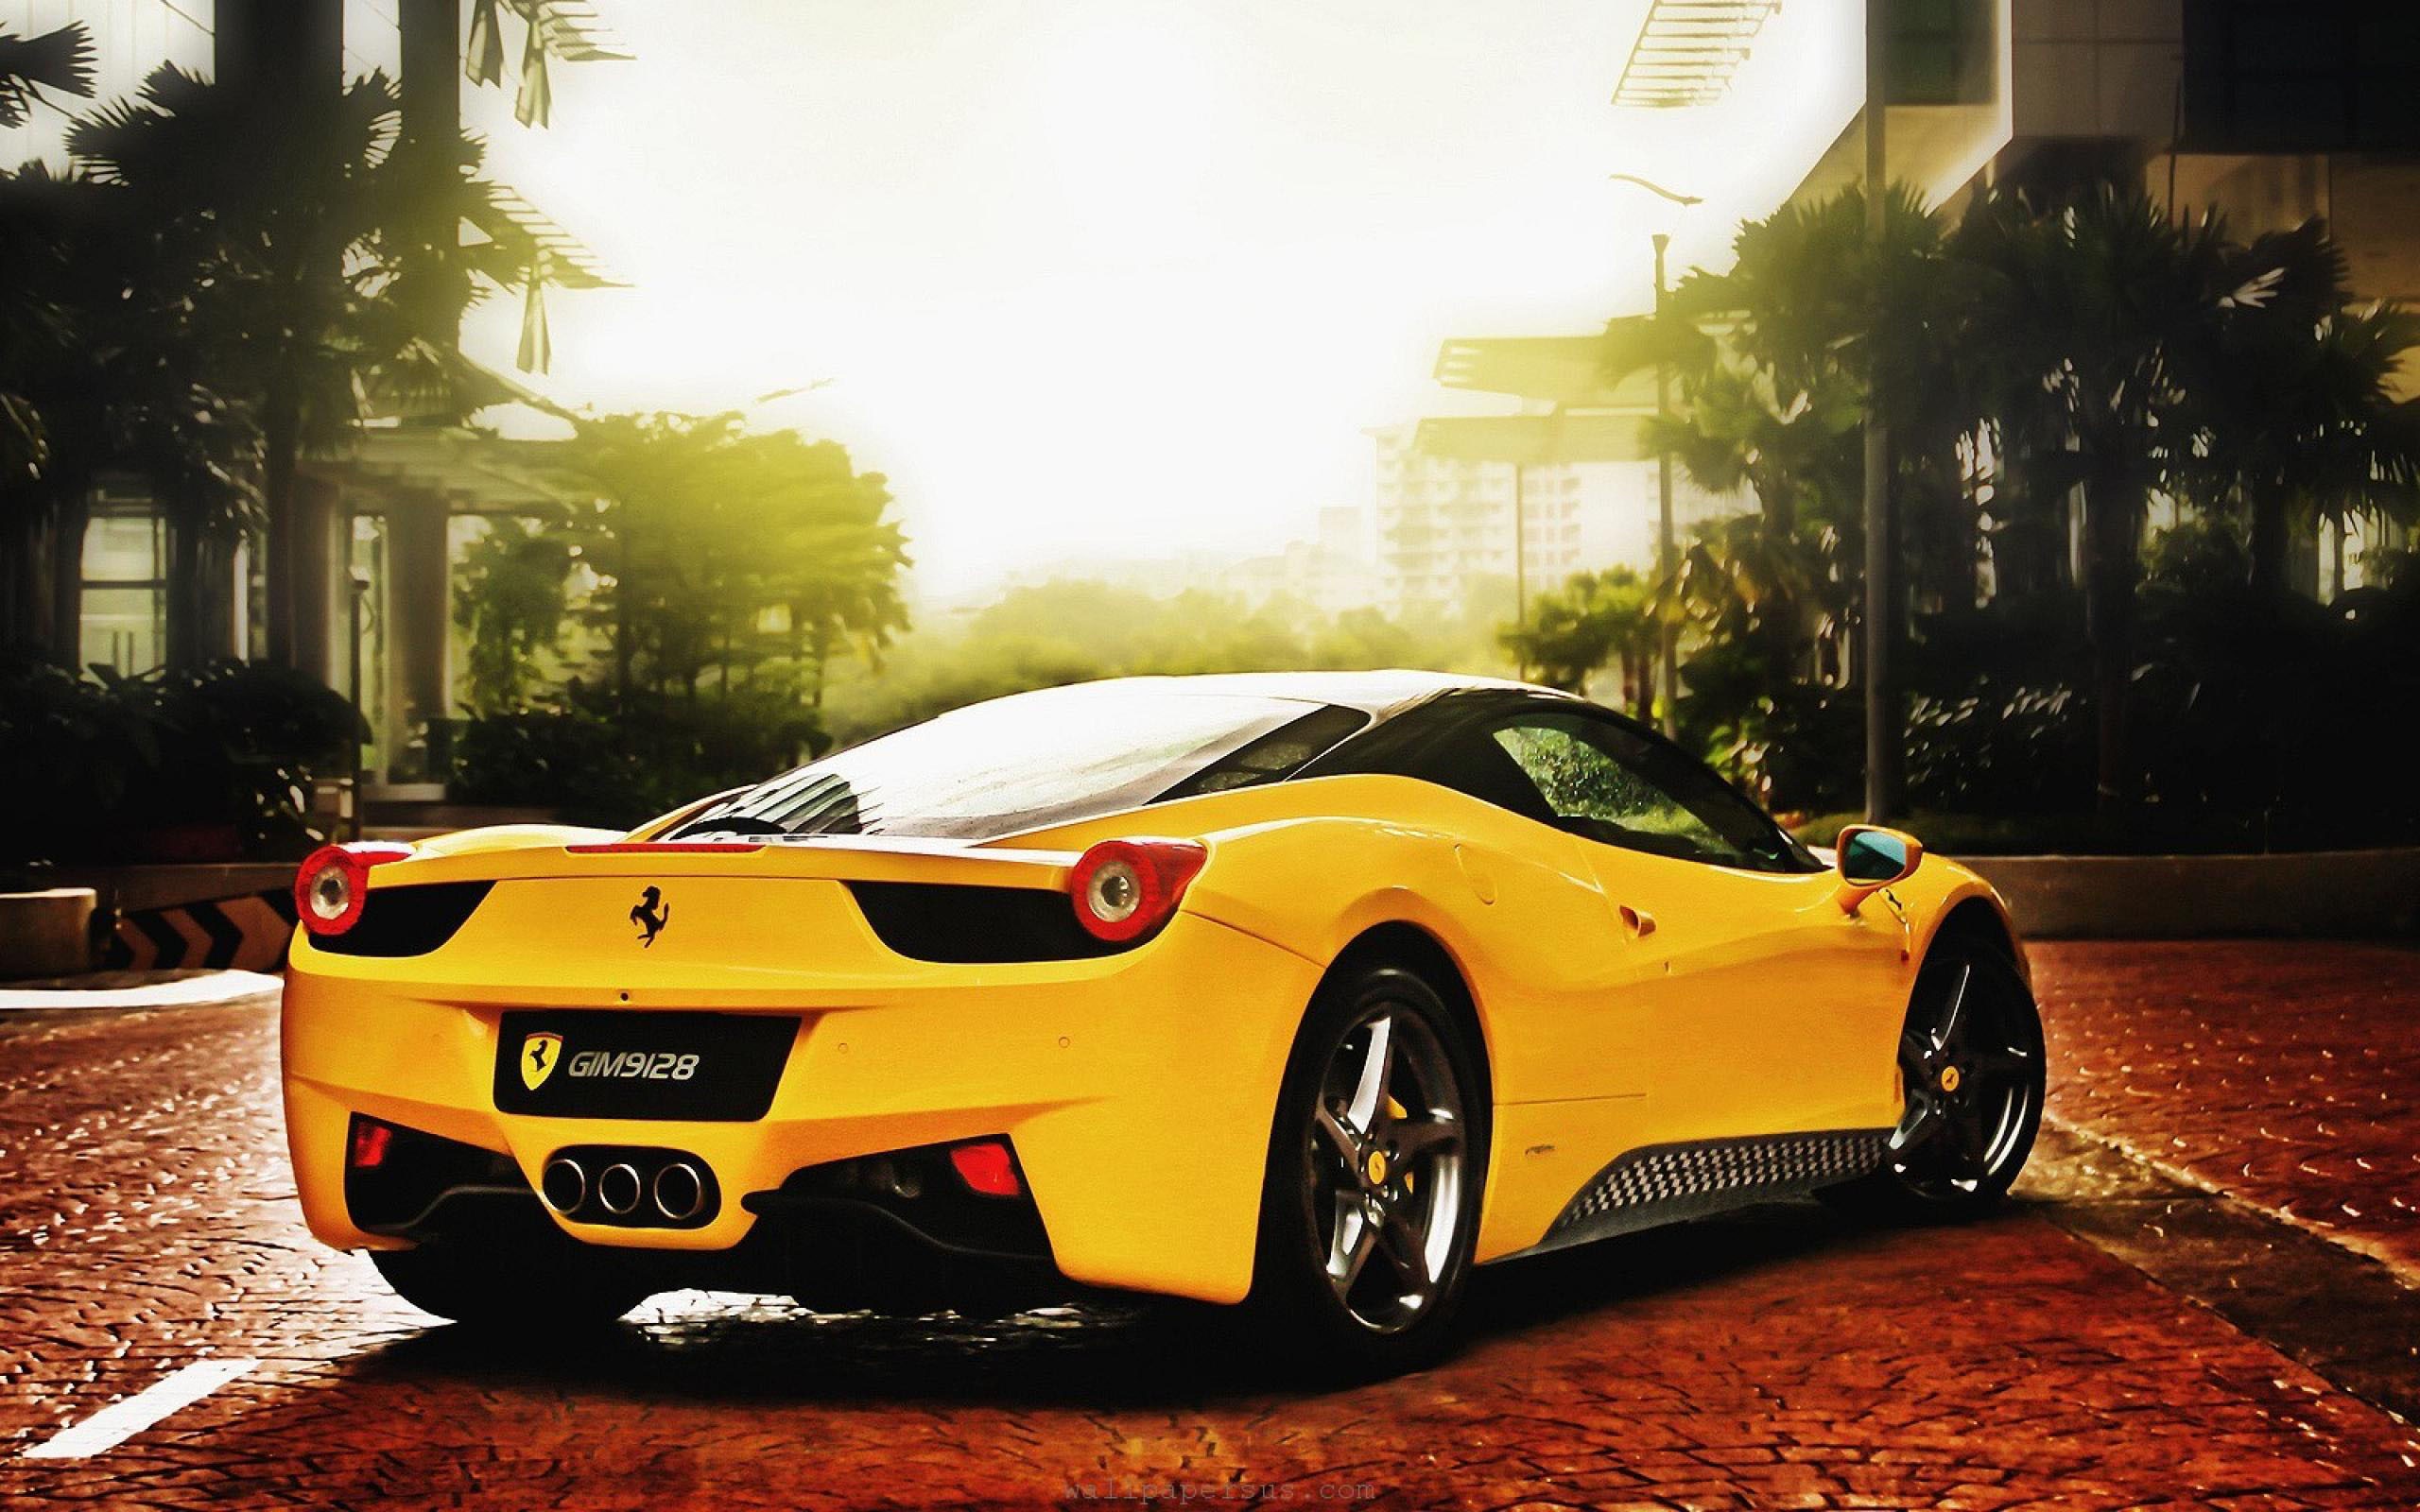 Cars, Ferrari, Ferrari 458, Yellow Car wallpaper | cars ...